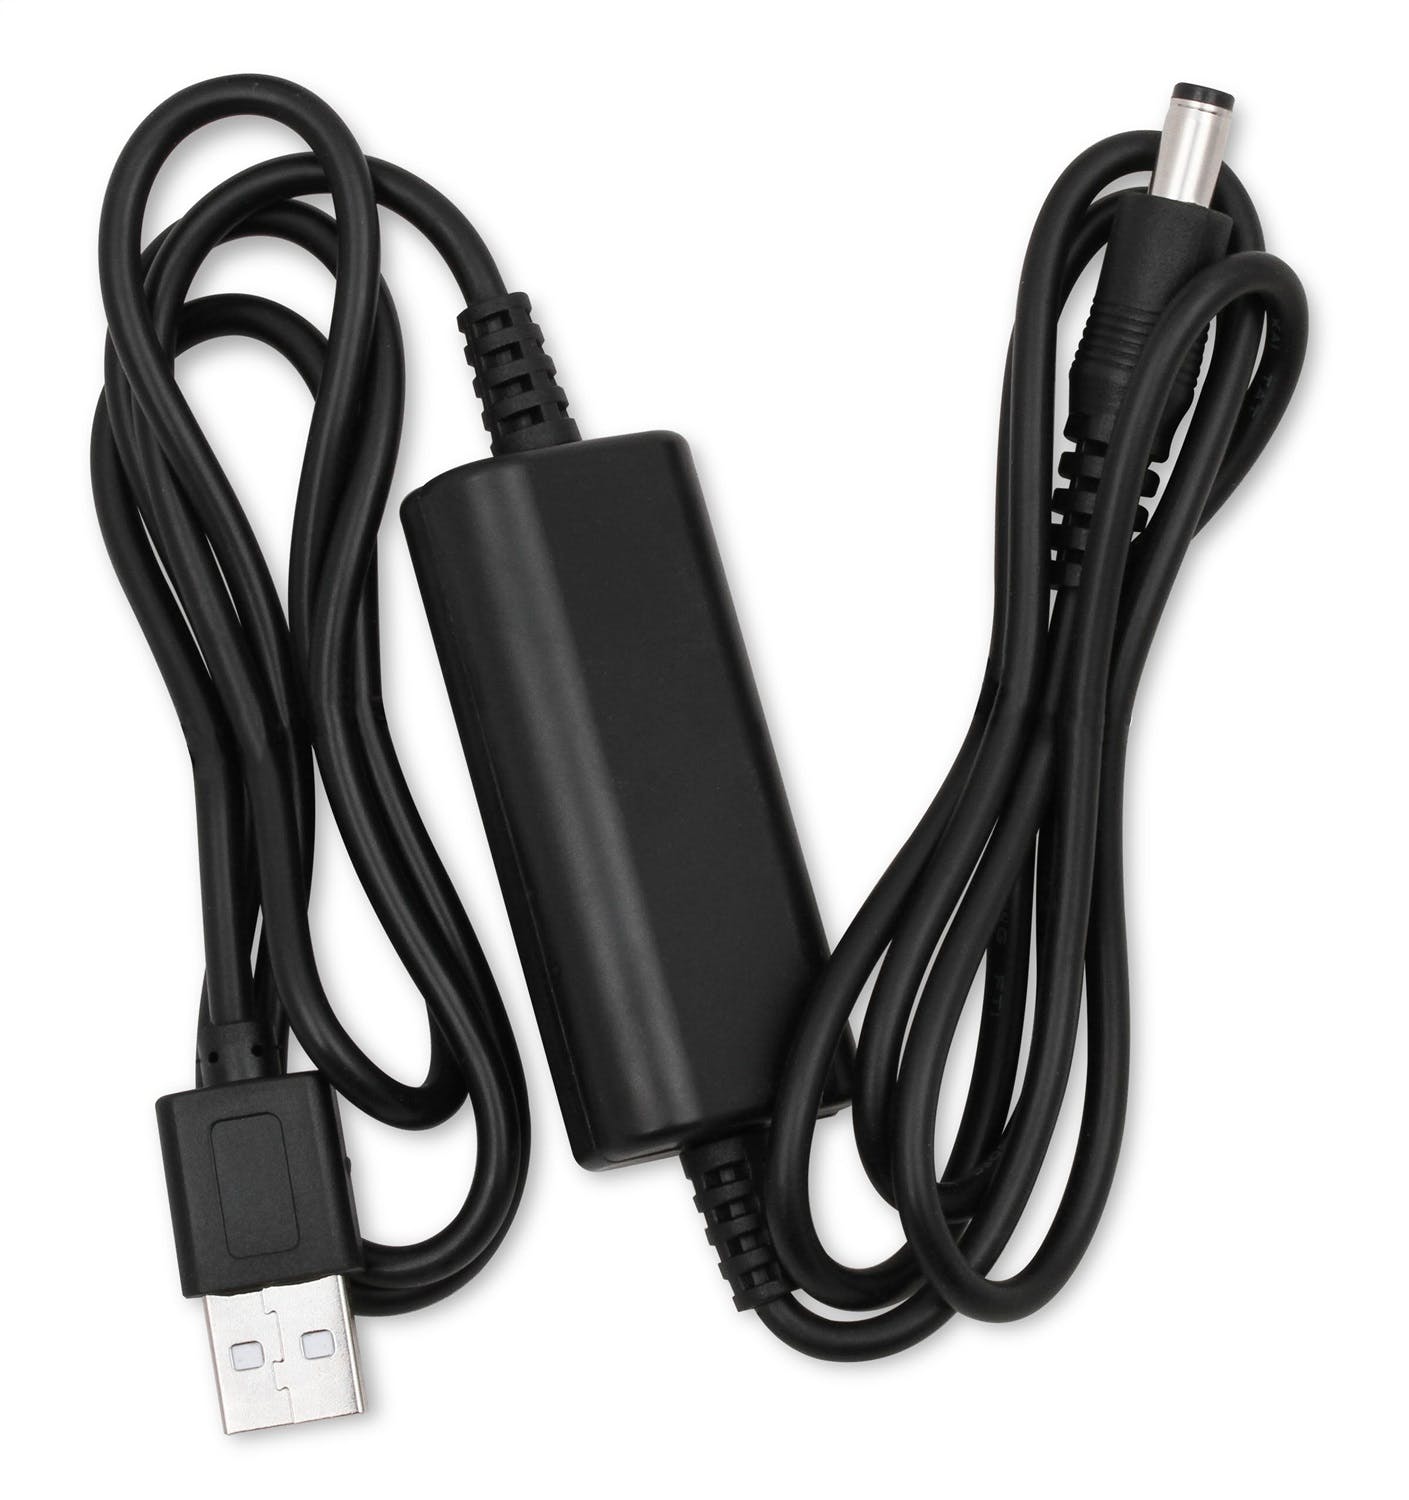 Racepak 28118-2001 Vantage CL1 USB Charging Cable